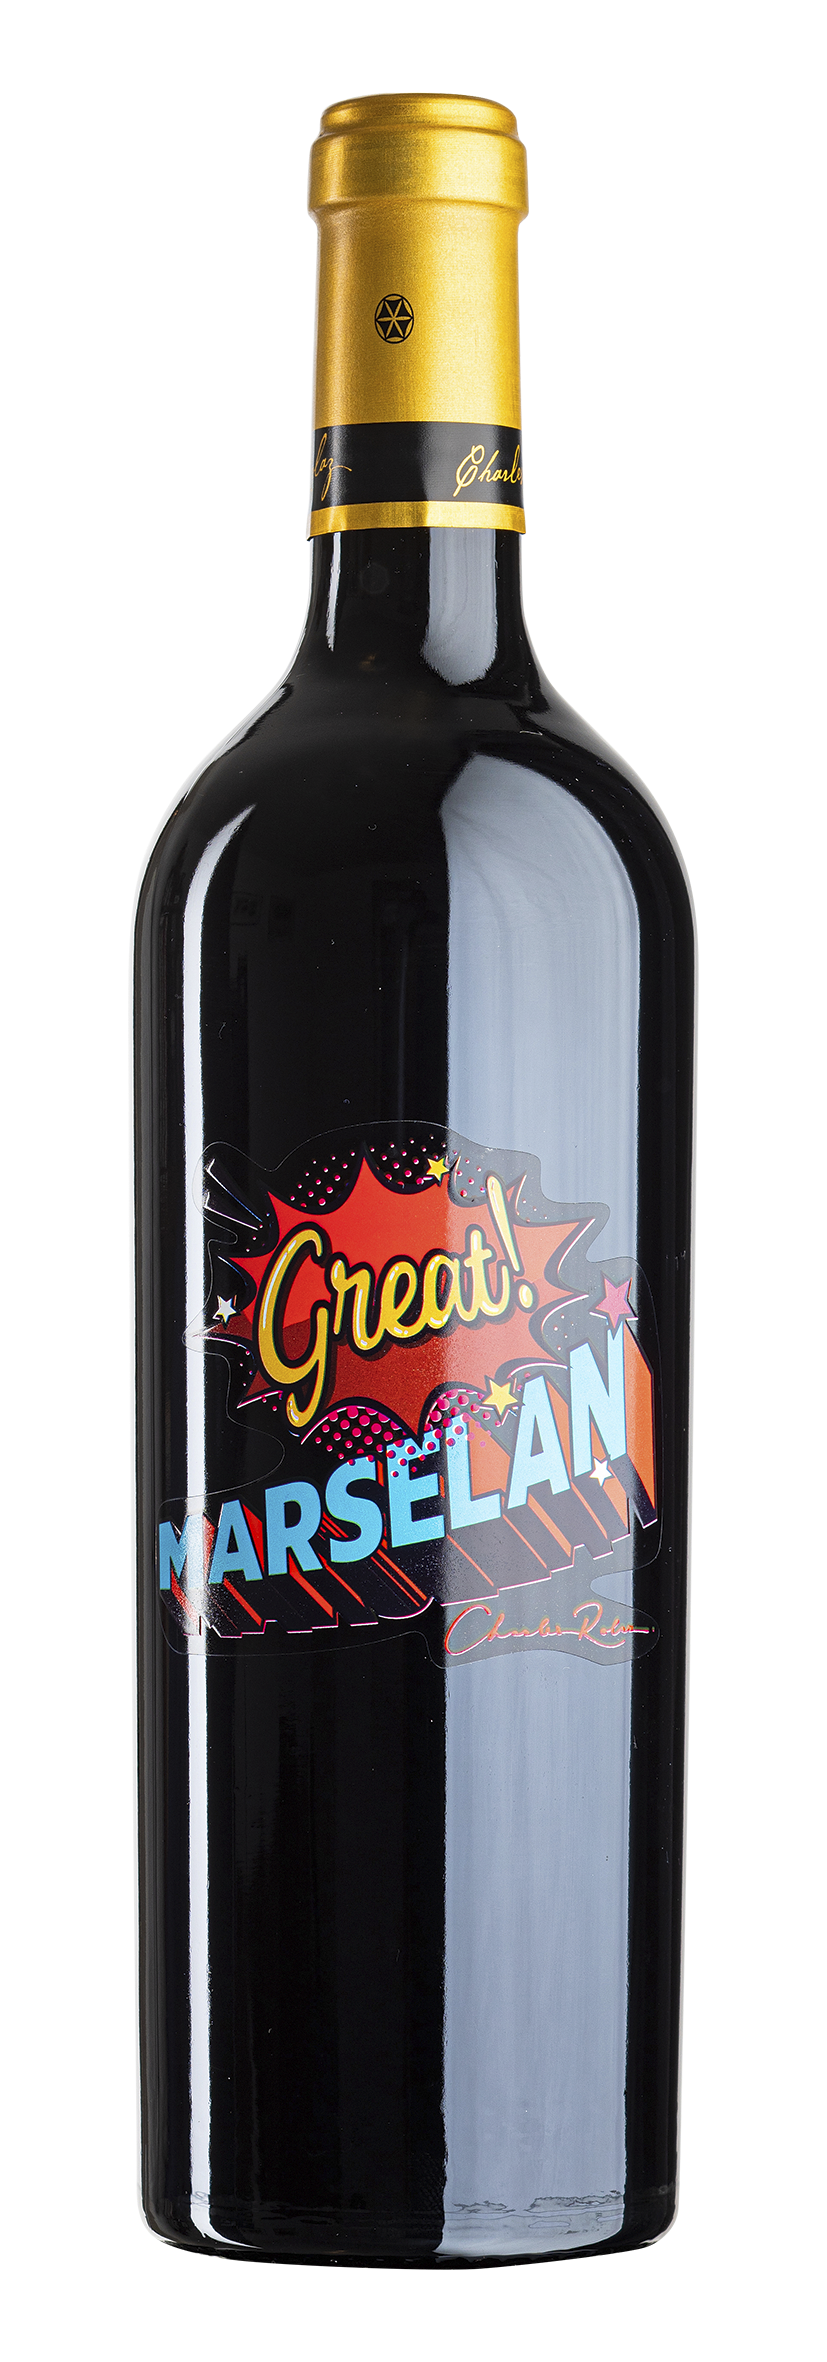 Marselan Great! 2017